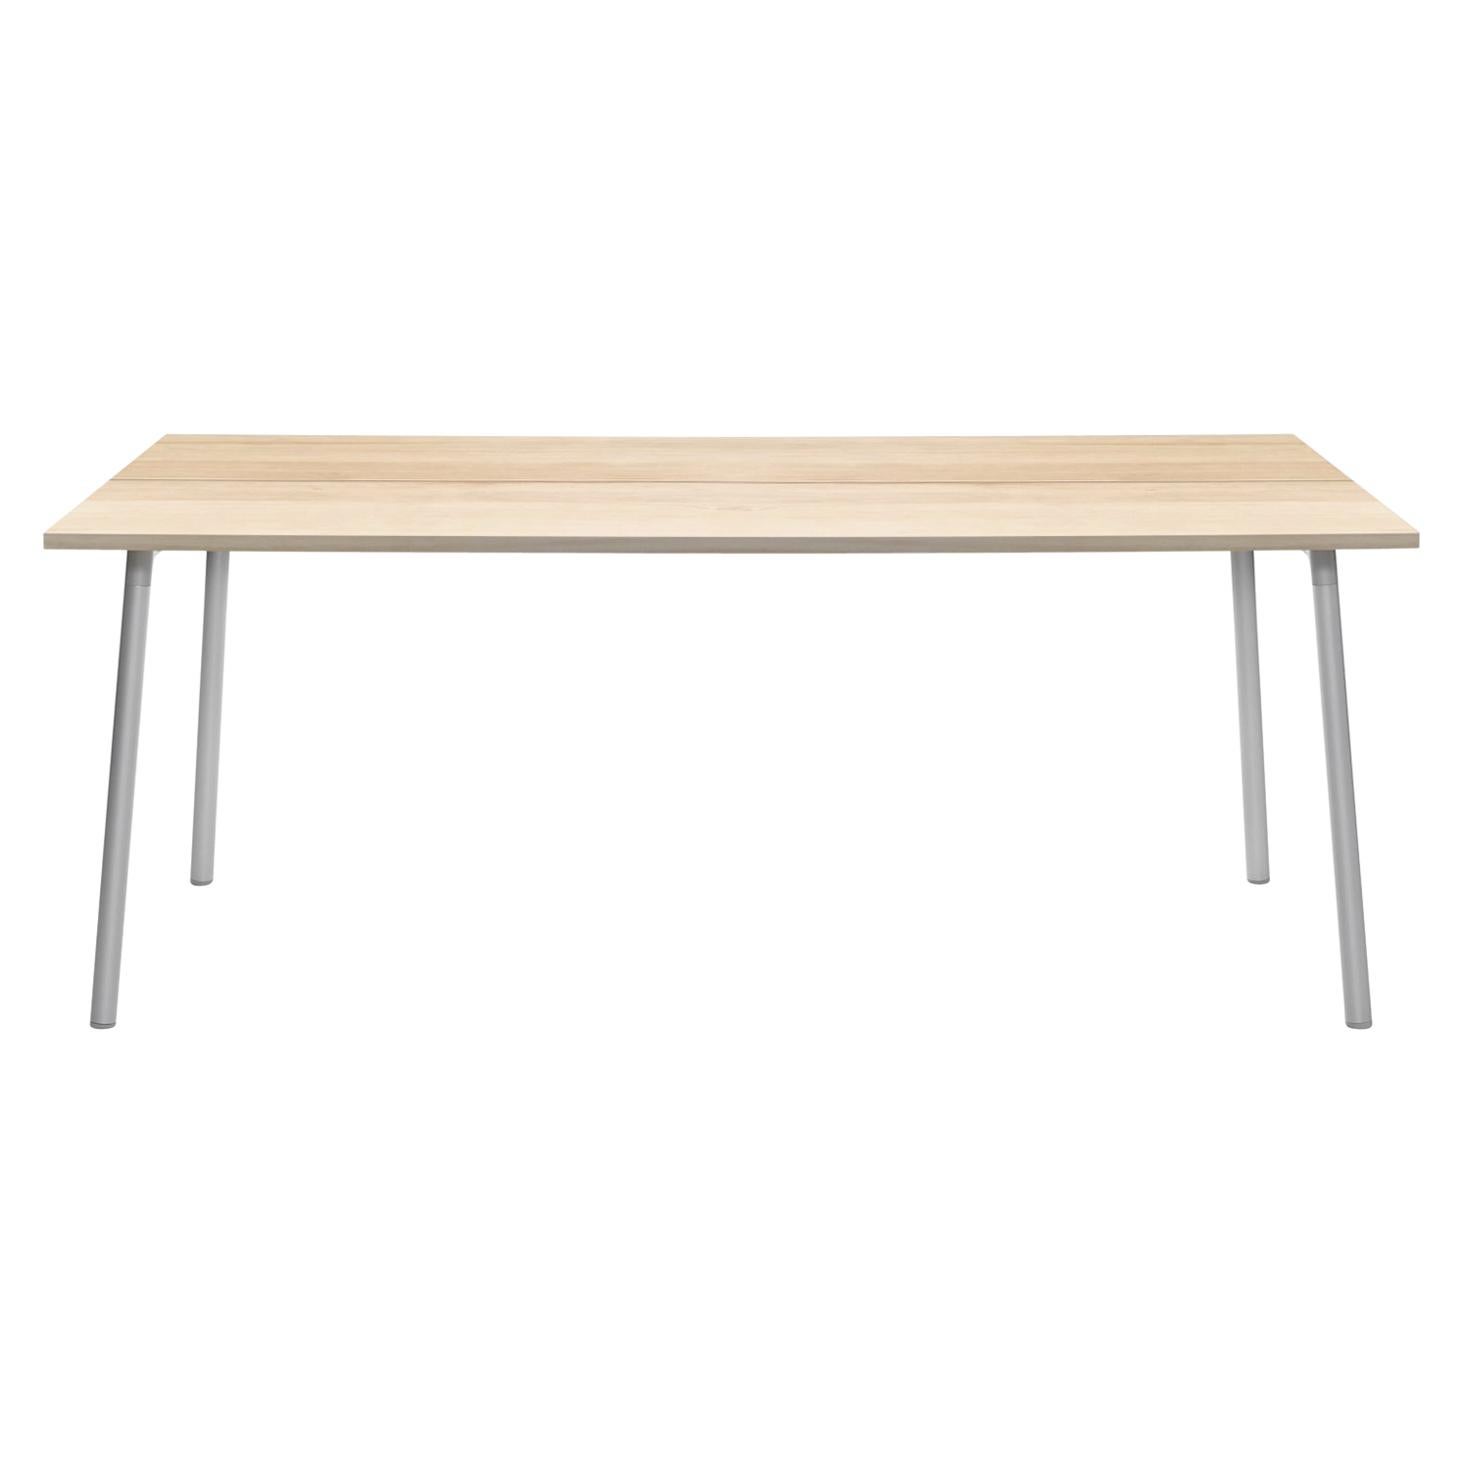 Table Emeco Run 180 cm avec cadre en aluminium et plateau en bois par Sam Hecht et Kim Colin